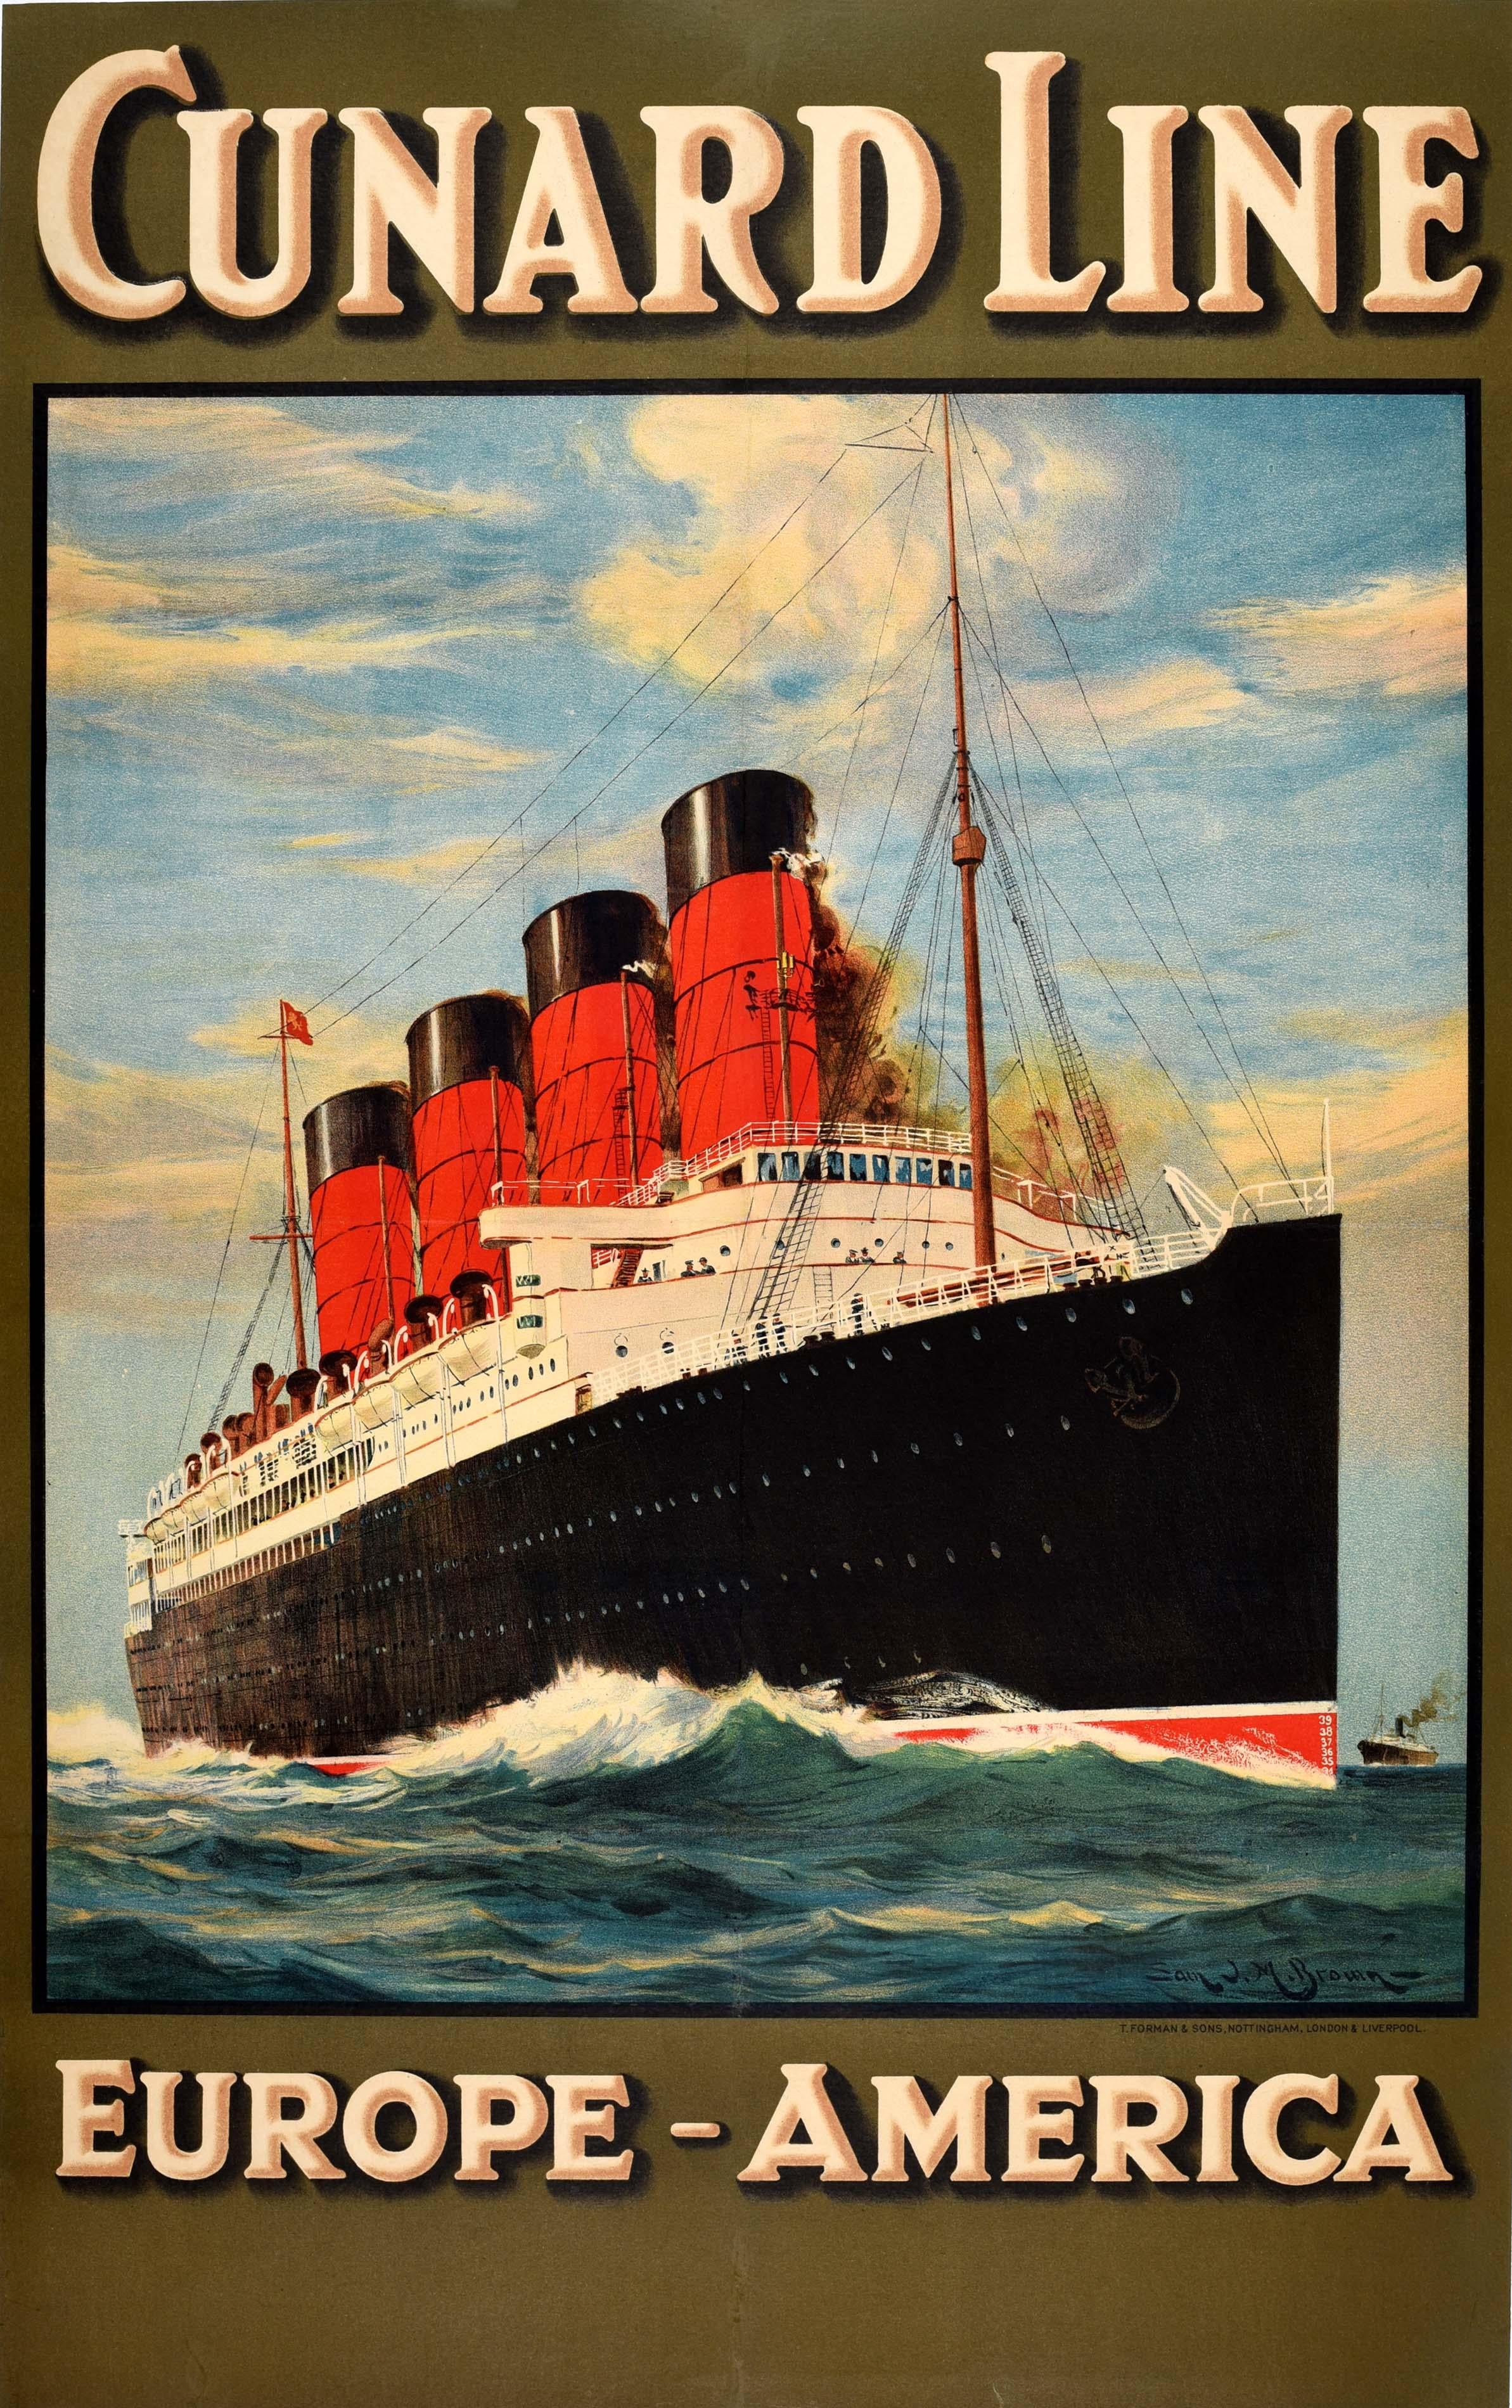 Samuel John Milton Brown Print - Original Vintage Travel Advertising Poster Cunard Line Europe America Cruise